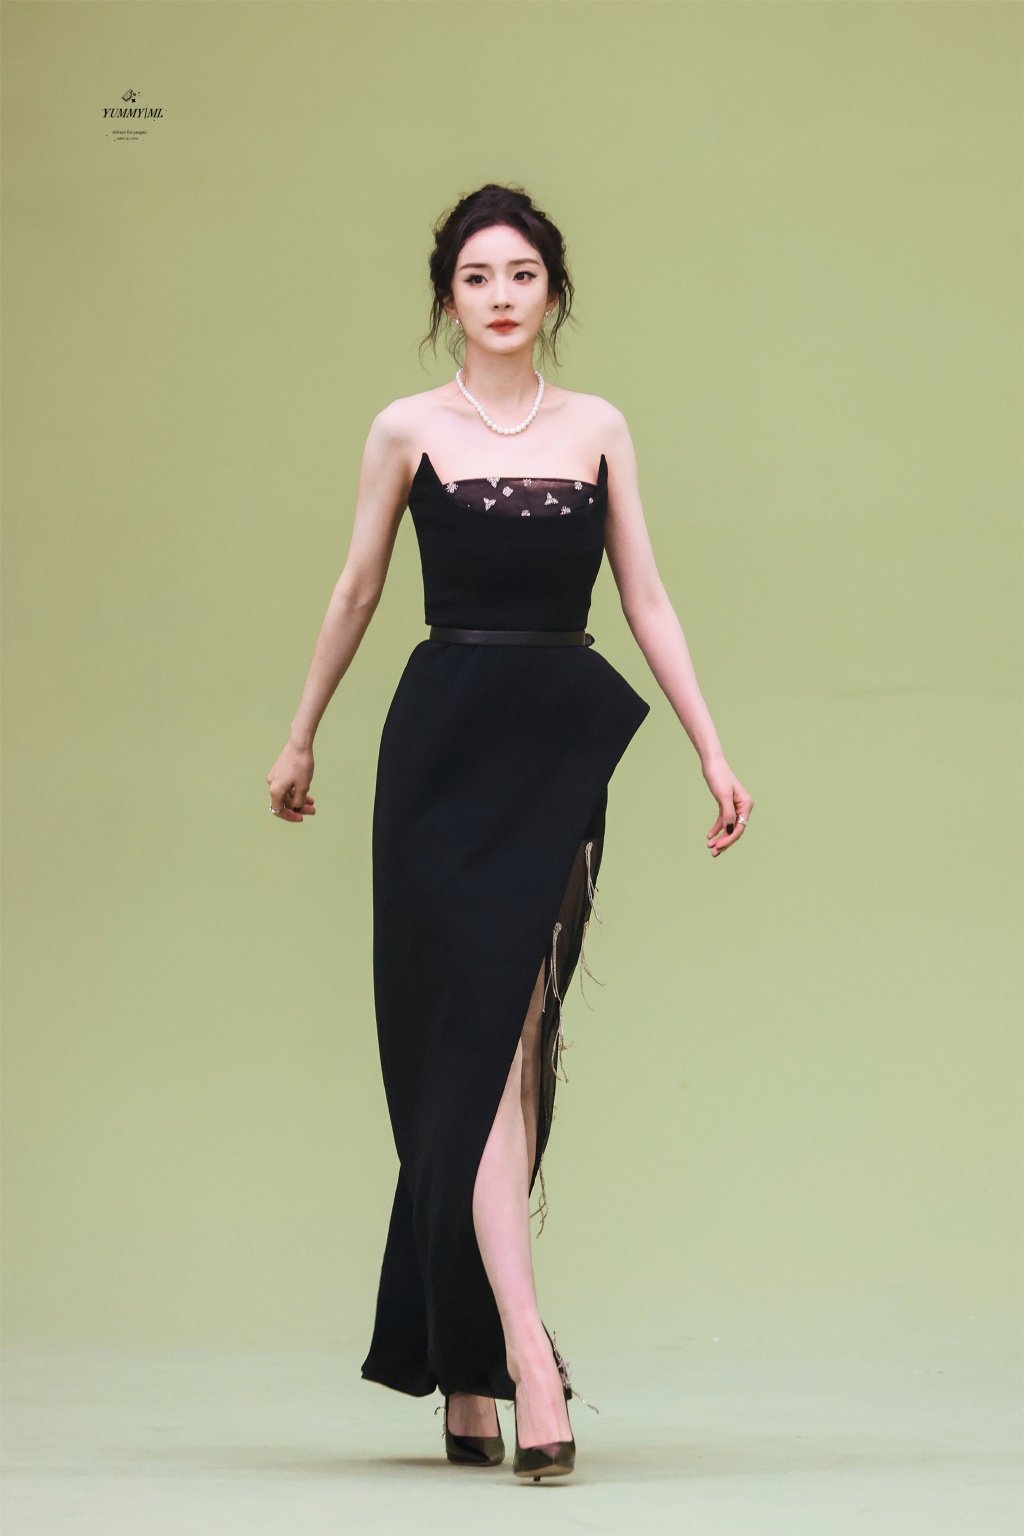 杨幂最新活动造型饭拍图 盘发高开叉黑裙造型，这腿长真是绝了！